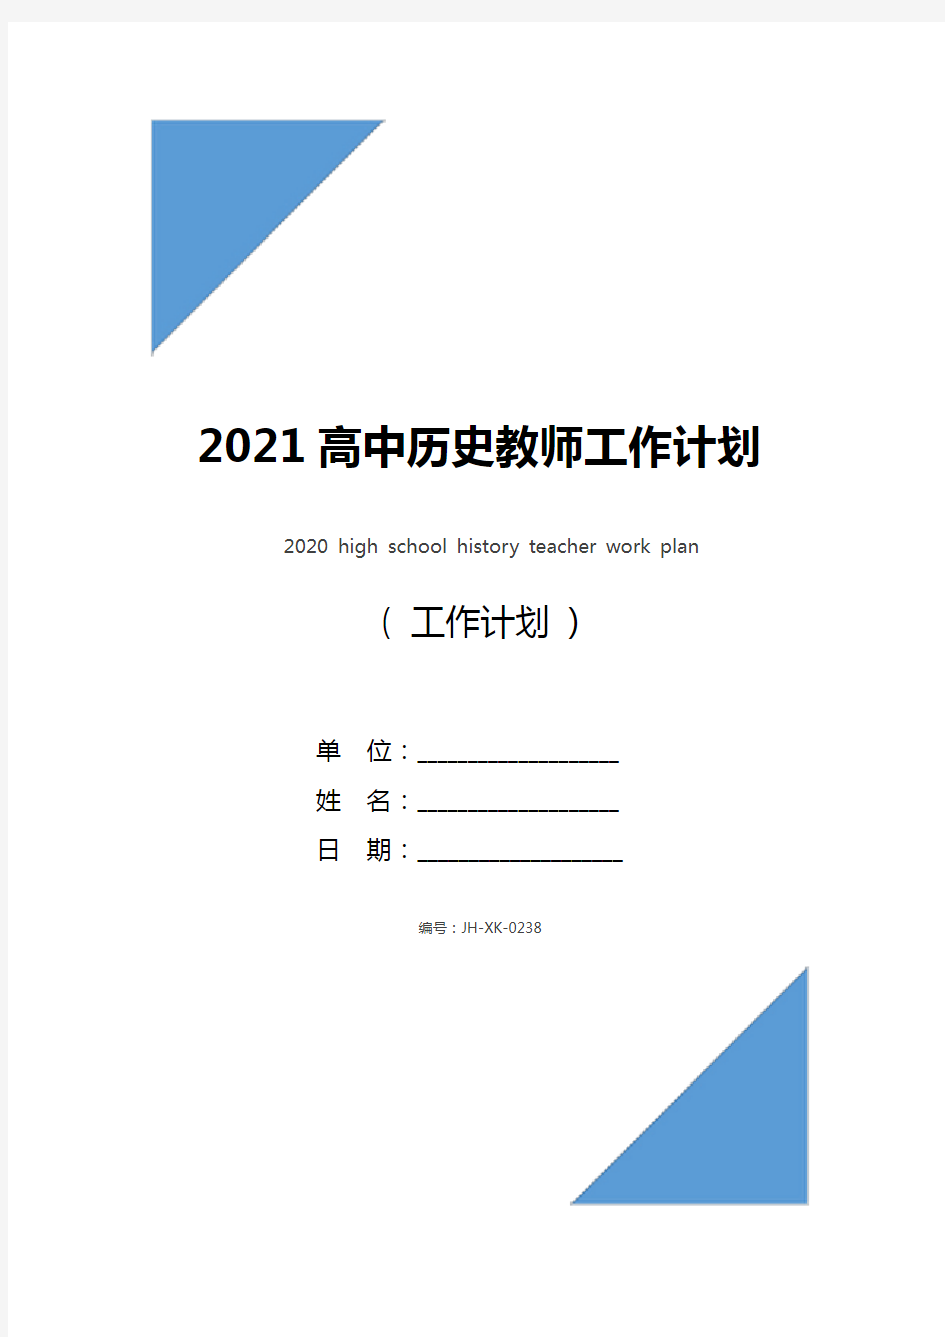 2021高中历史教师工作计划(标准版)